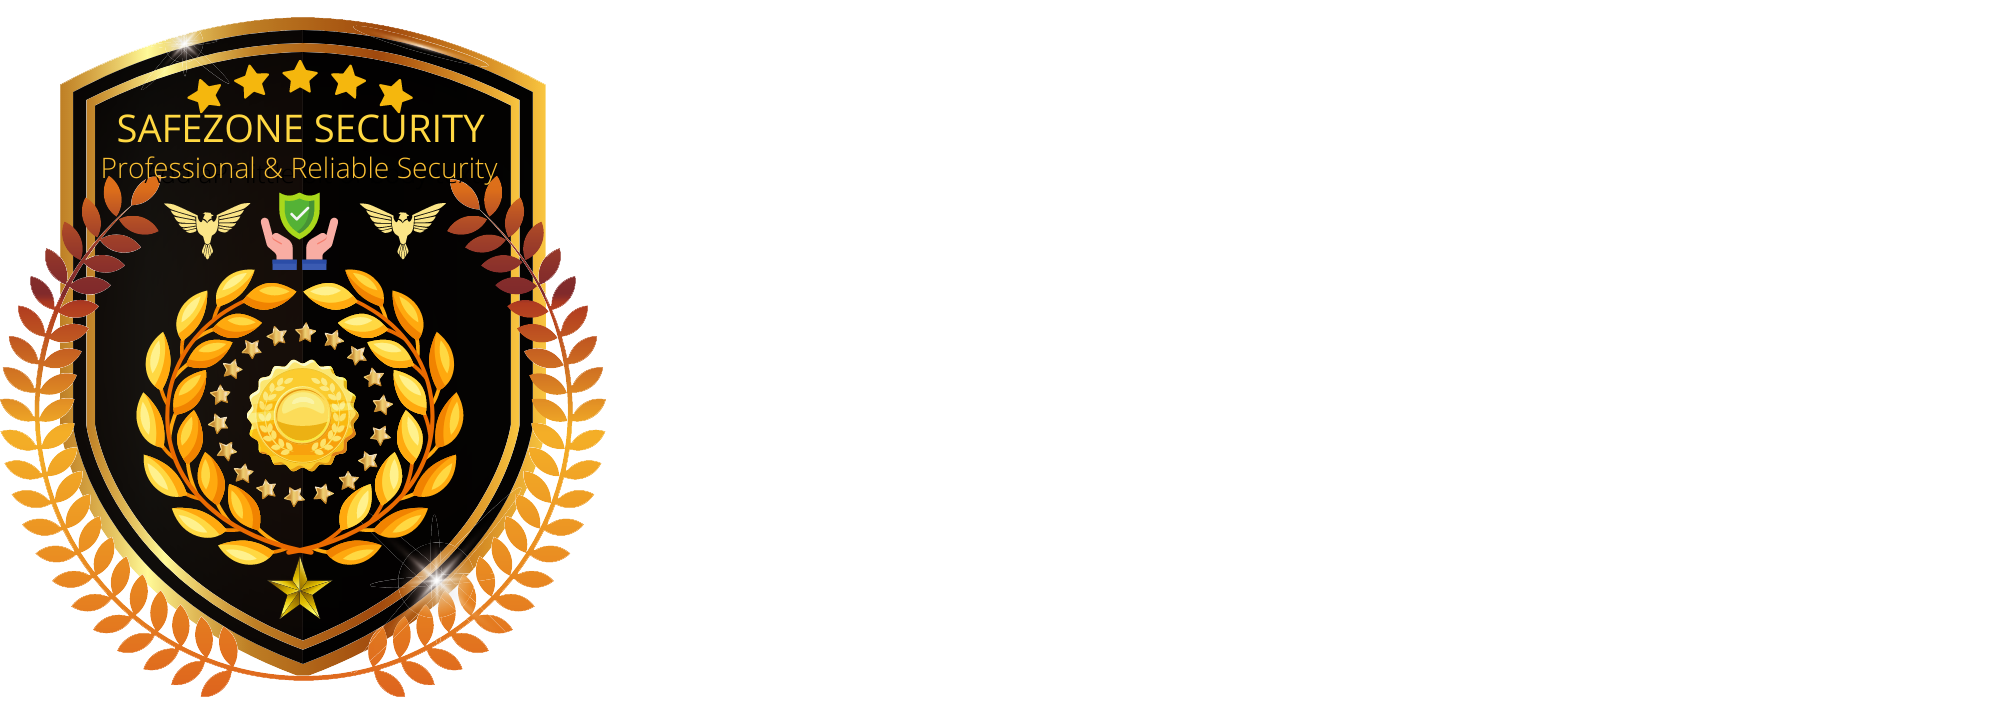 Safezone Security Service